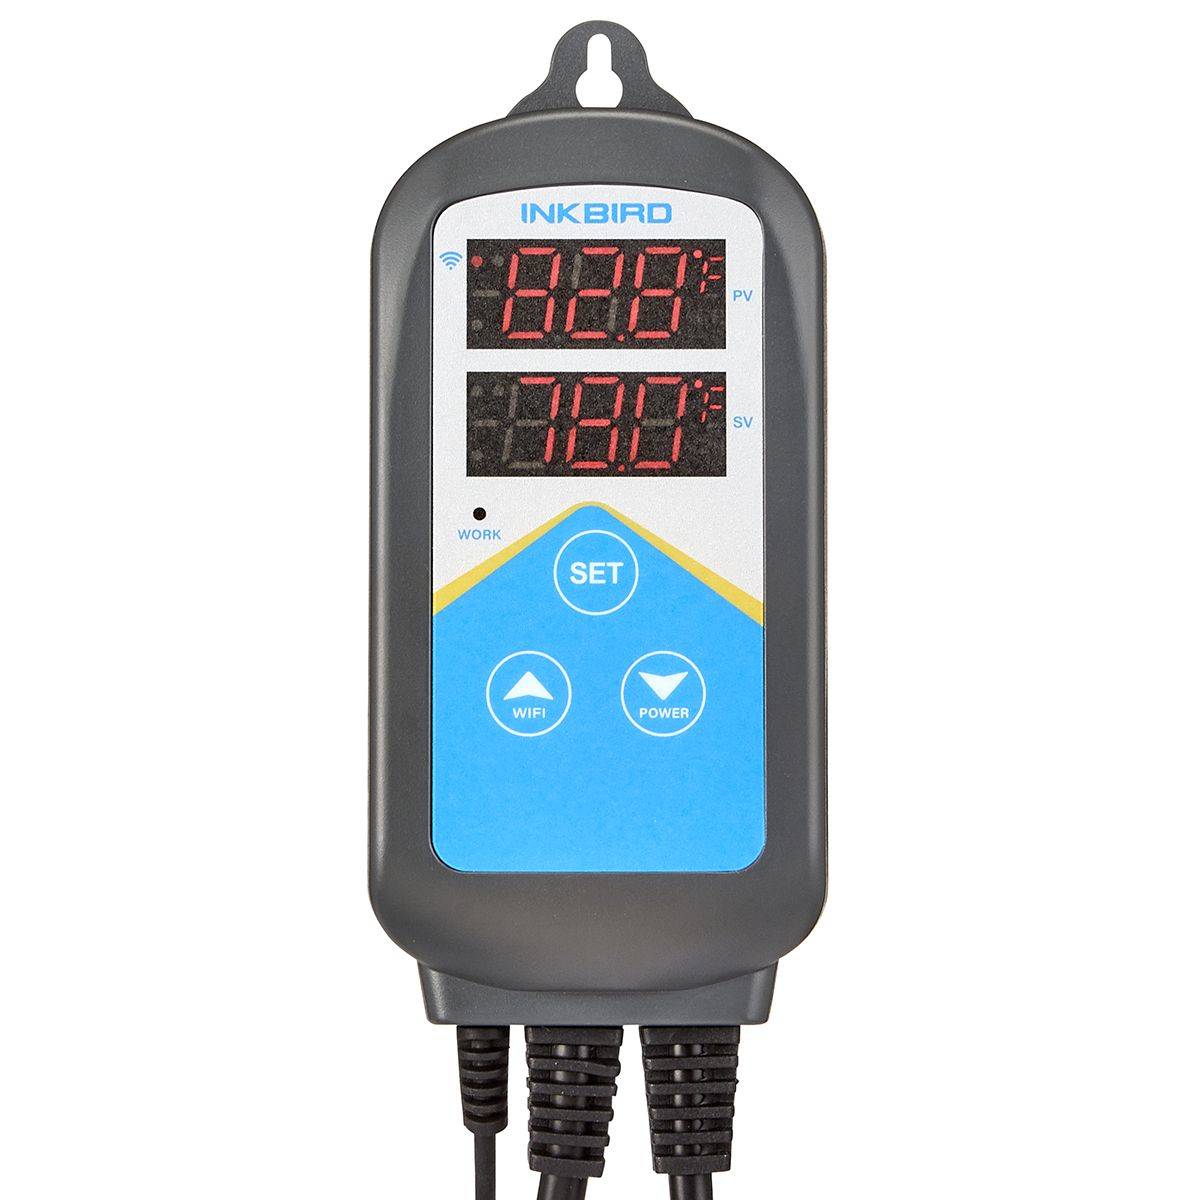 Thermostat Temperature Controller - INKBIRD - INKBIRD